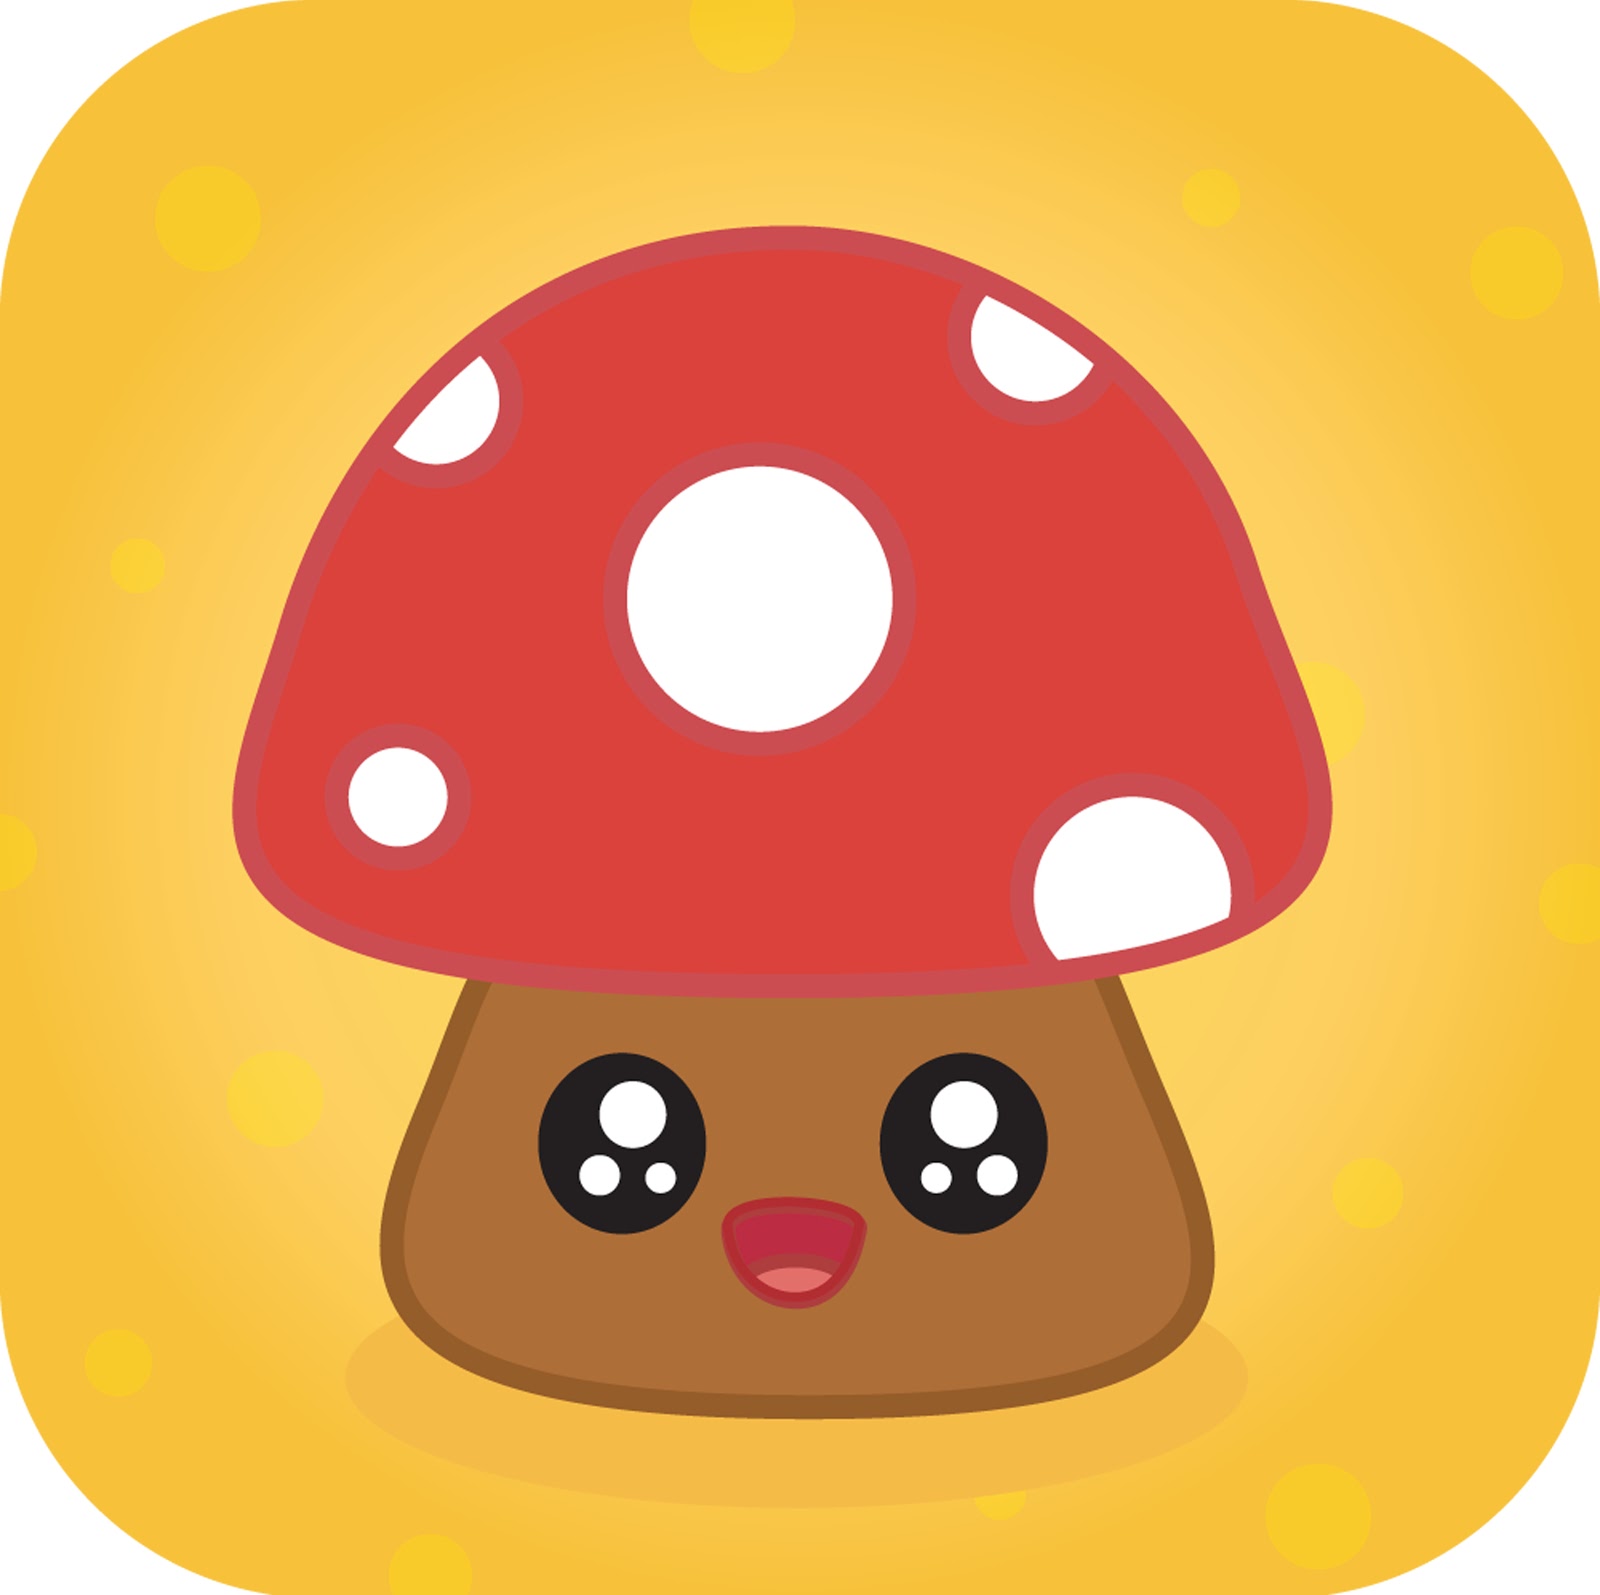 Cute Mushroom Drawing Photo